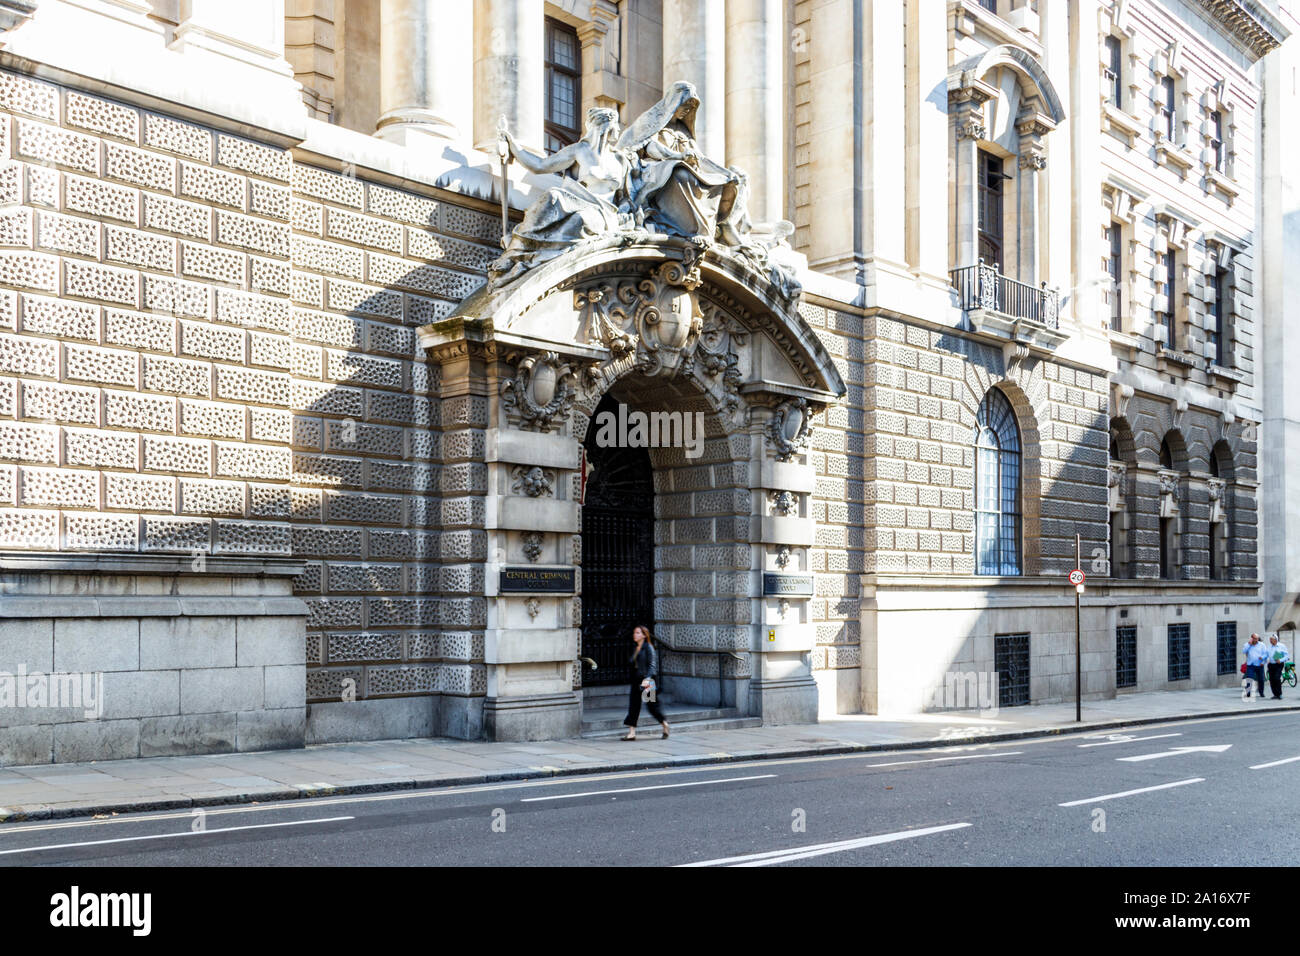 Cours de marche des piétons l'entrée de la Cour Criminelle Centrale, également connu sous le nom de Old Bailey, London, UK Banque D'Images